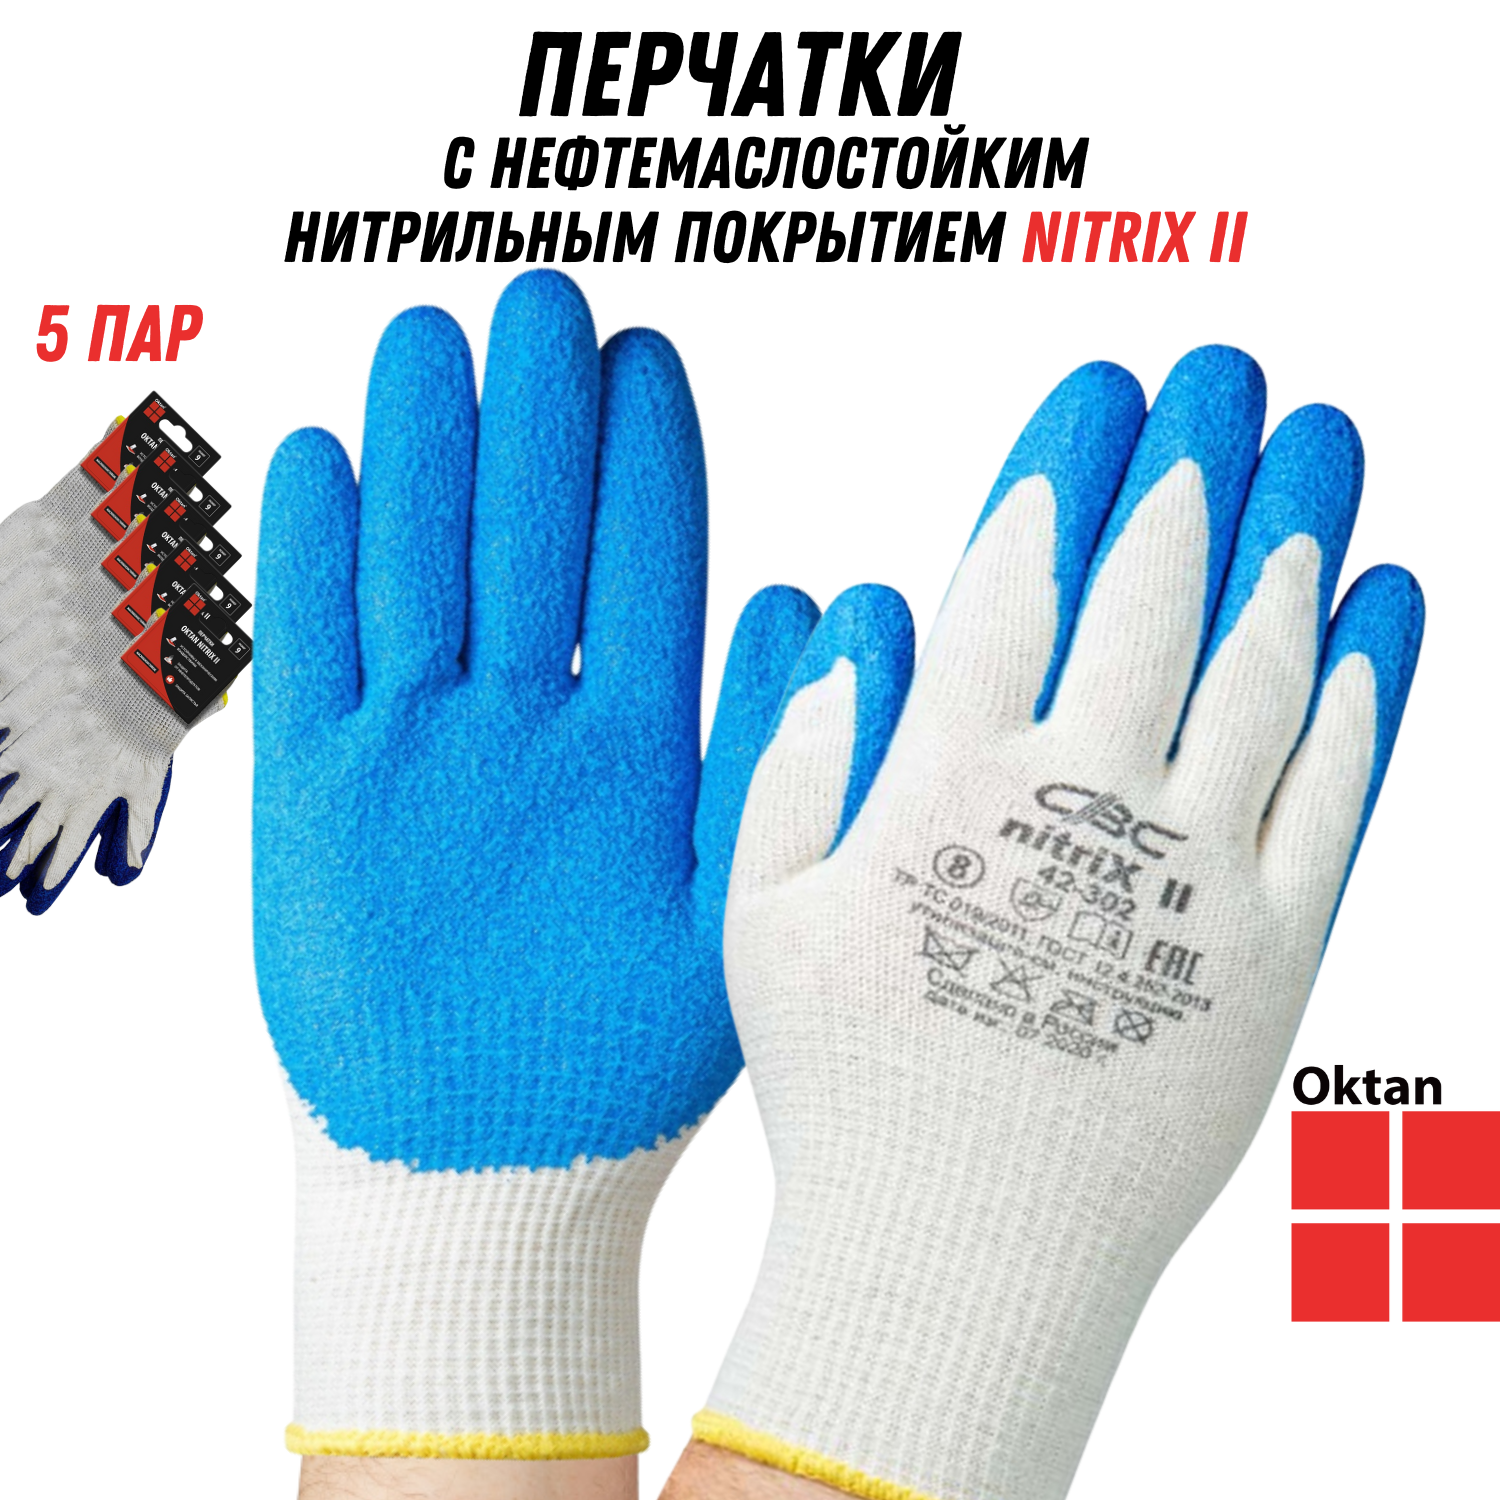 Перчатки рабочие Oktan NITRIX II А5-01-21-05-ММ белые с синим размер 9, 5 пар защитные рабочие женские перчатки sapset